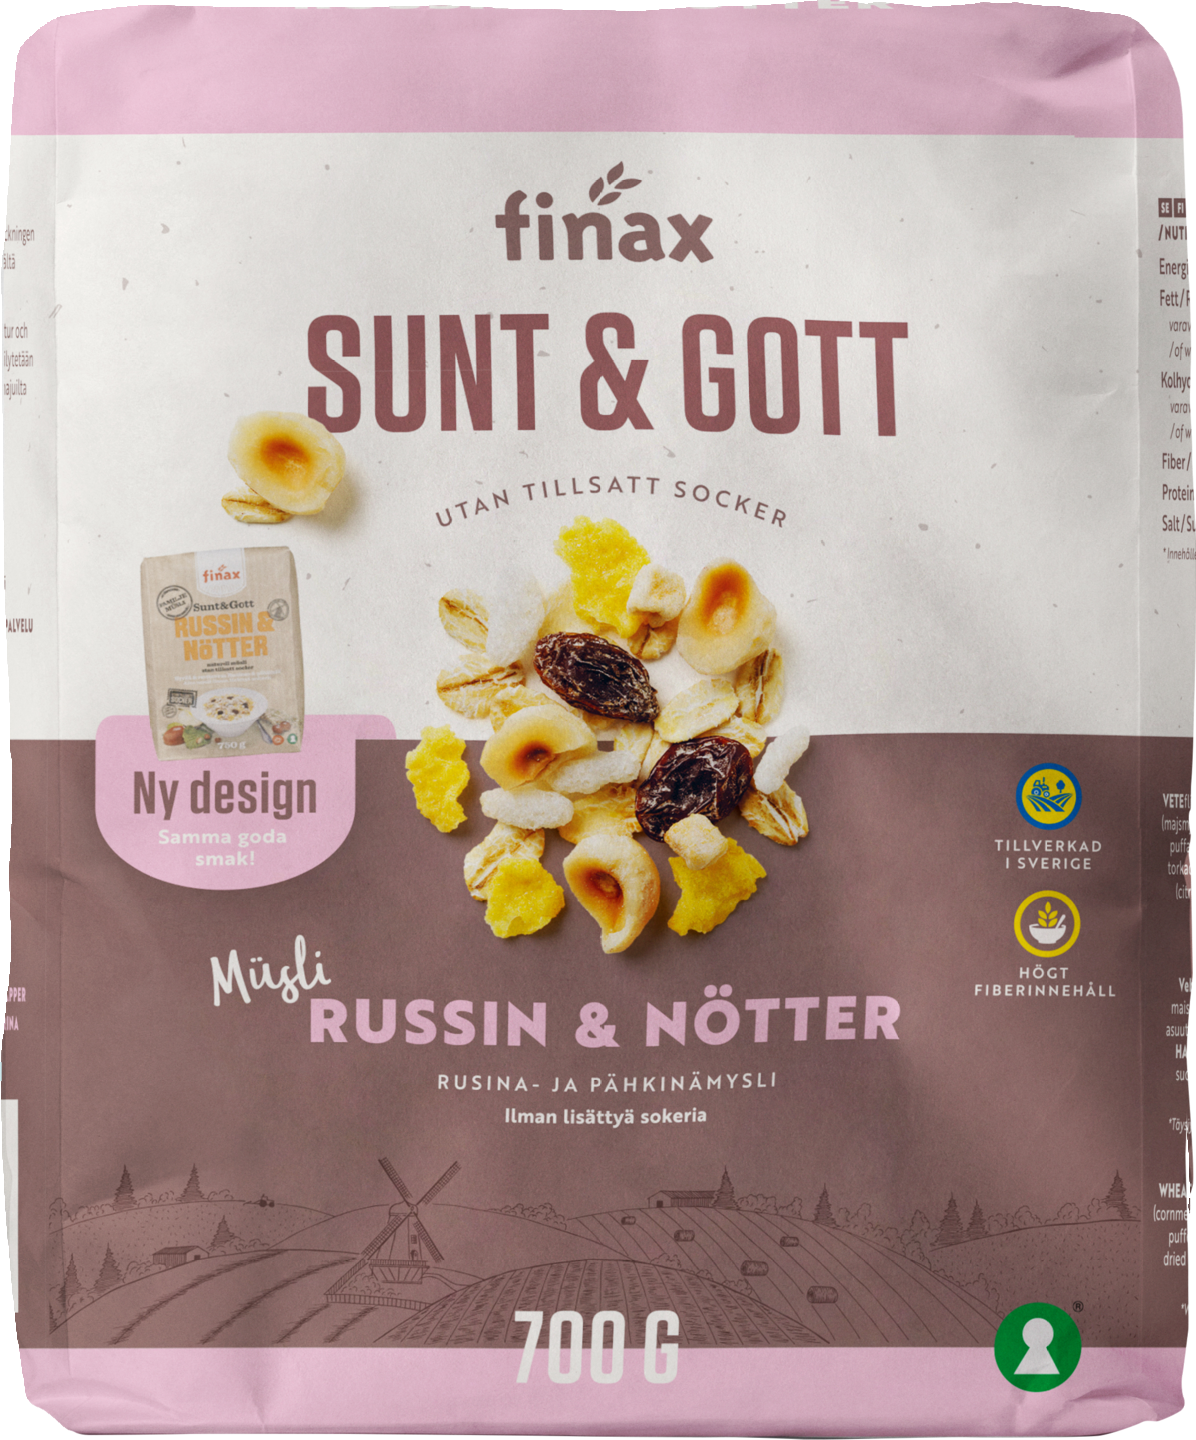 Finax Sunt & Gott mysii 700g rusina & pähkinä